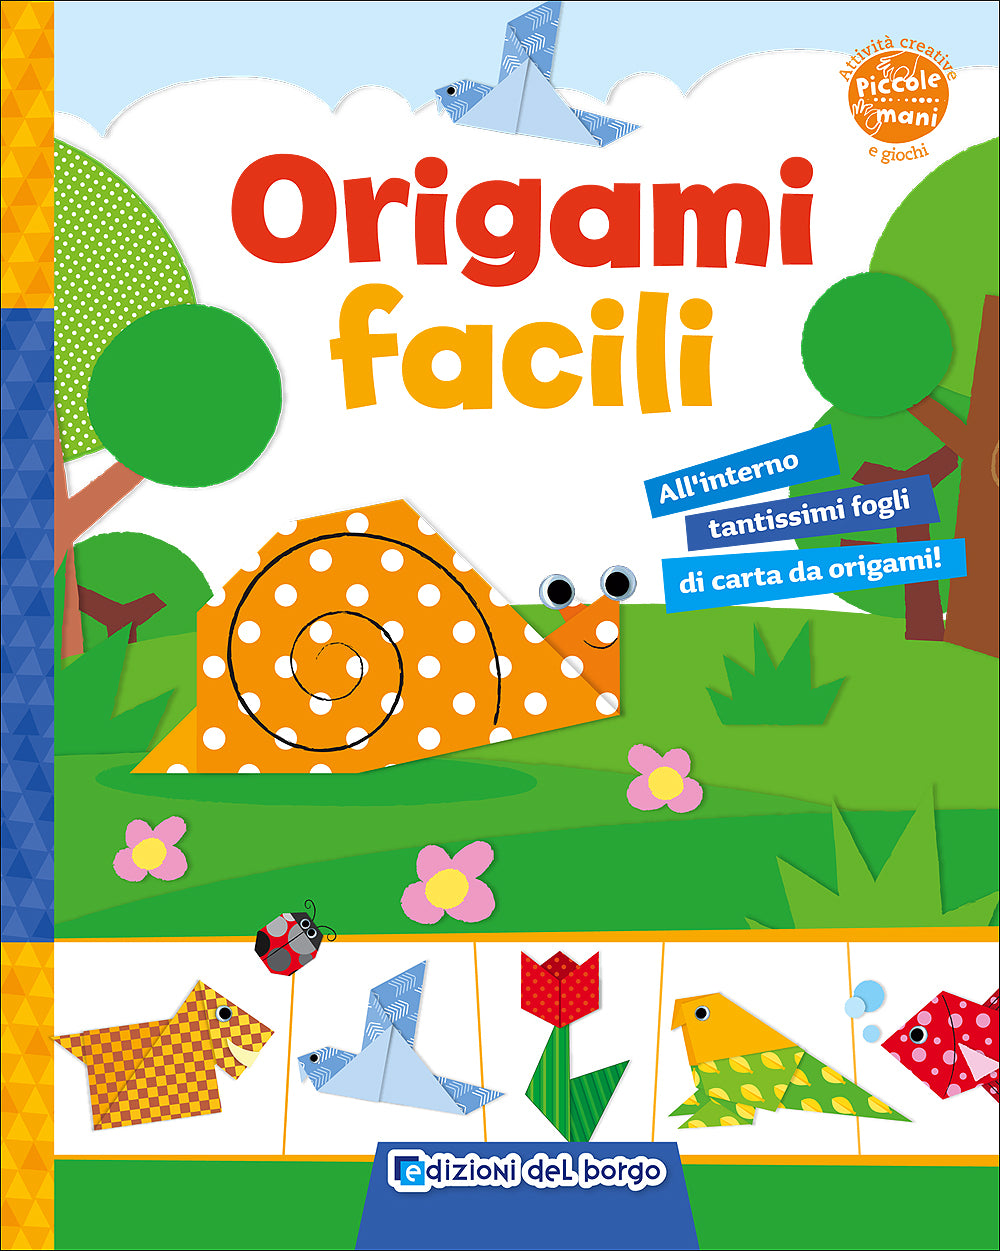 Origami facili. All'interno tantissimi fogli di carta da origami!